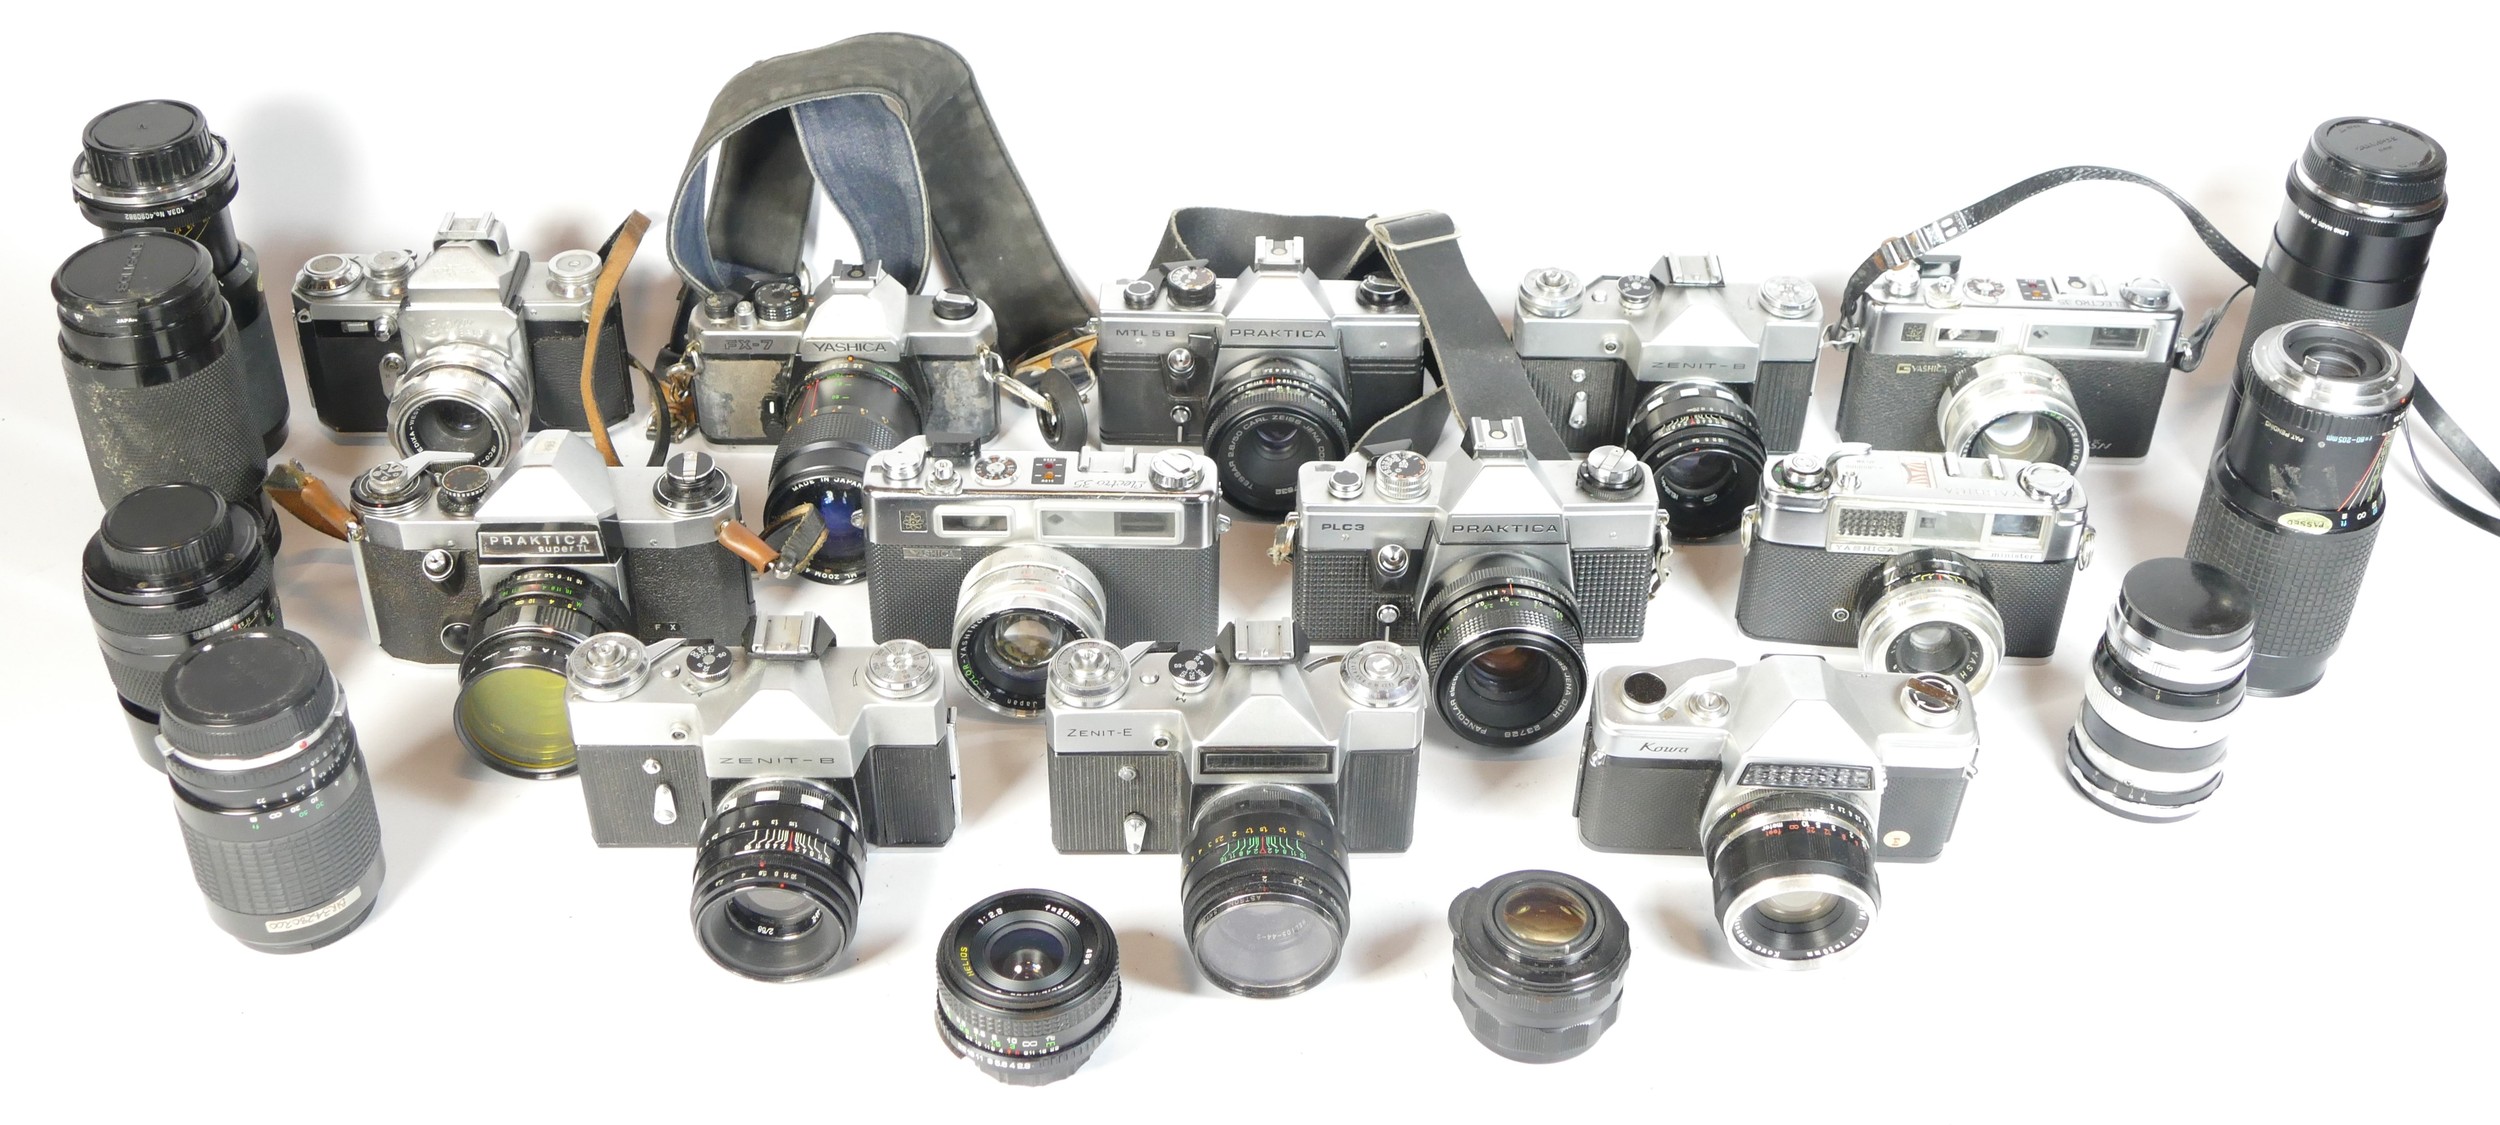 Thirteen SLR vintage film cameras to include a Yashica FX-7, a Praktica Super TL, a Zenit E and a